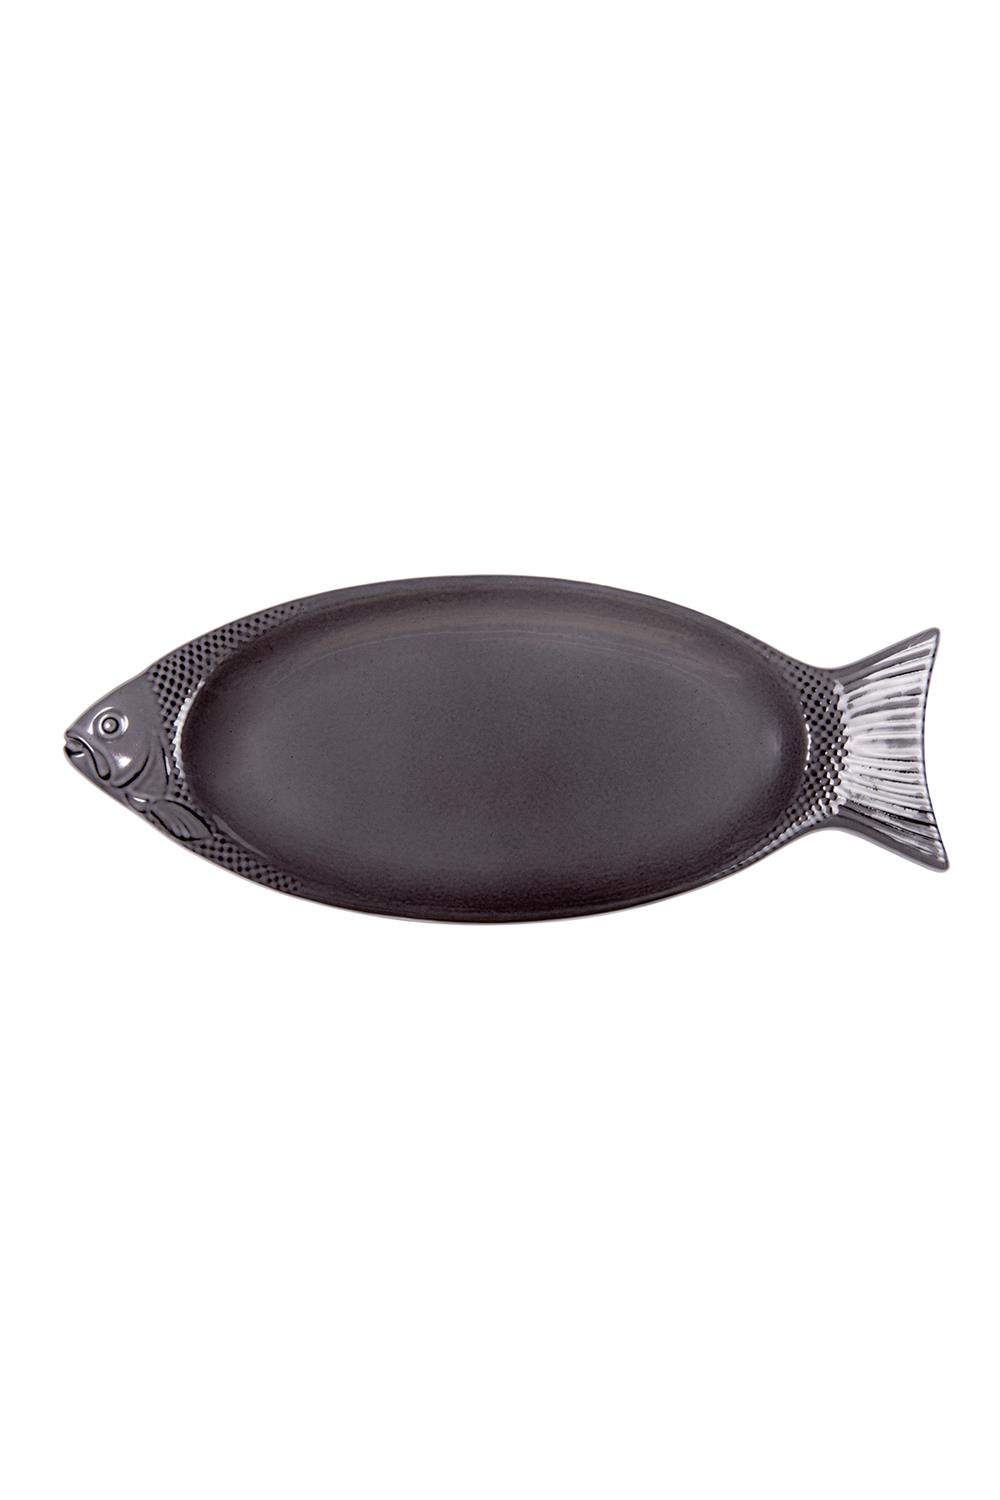 Sürel Demir Döküm Balık Sunum Tabağı 17x33 cm - Sürel - Duygun Home -  Kozmetik, Hazırlık ve Pişirme Ürünleri